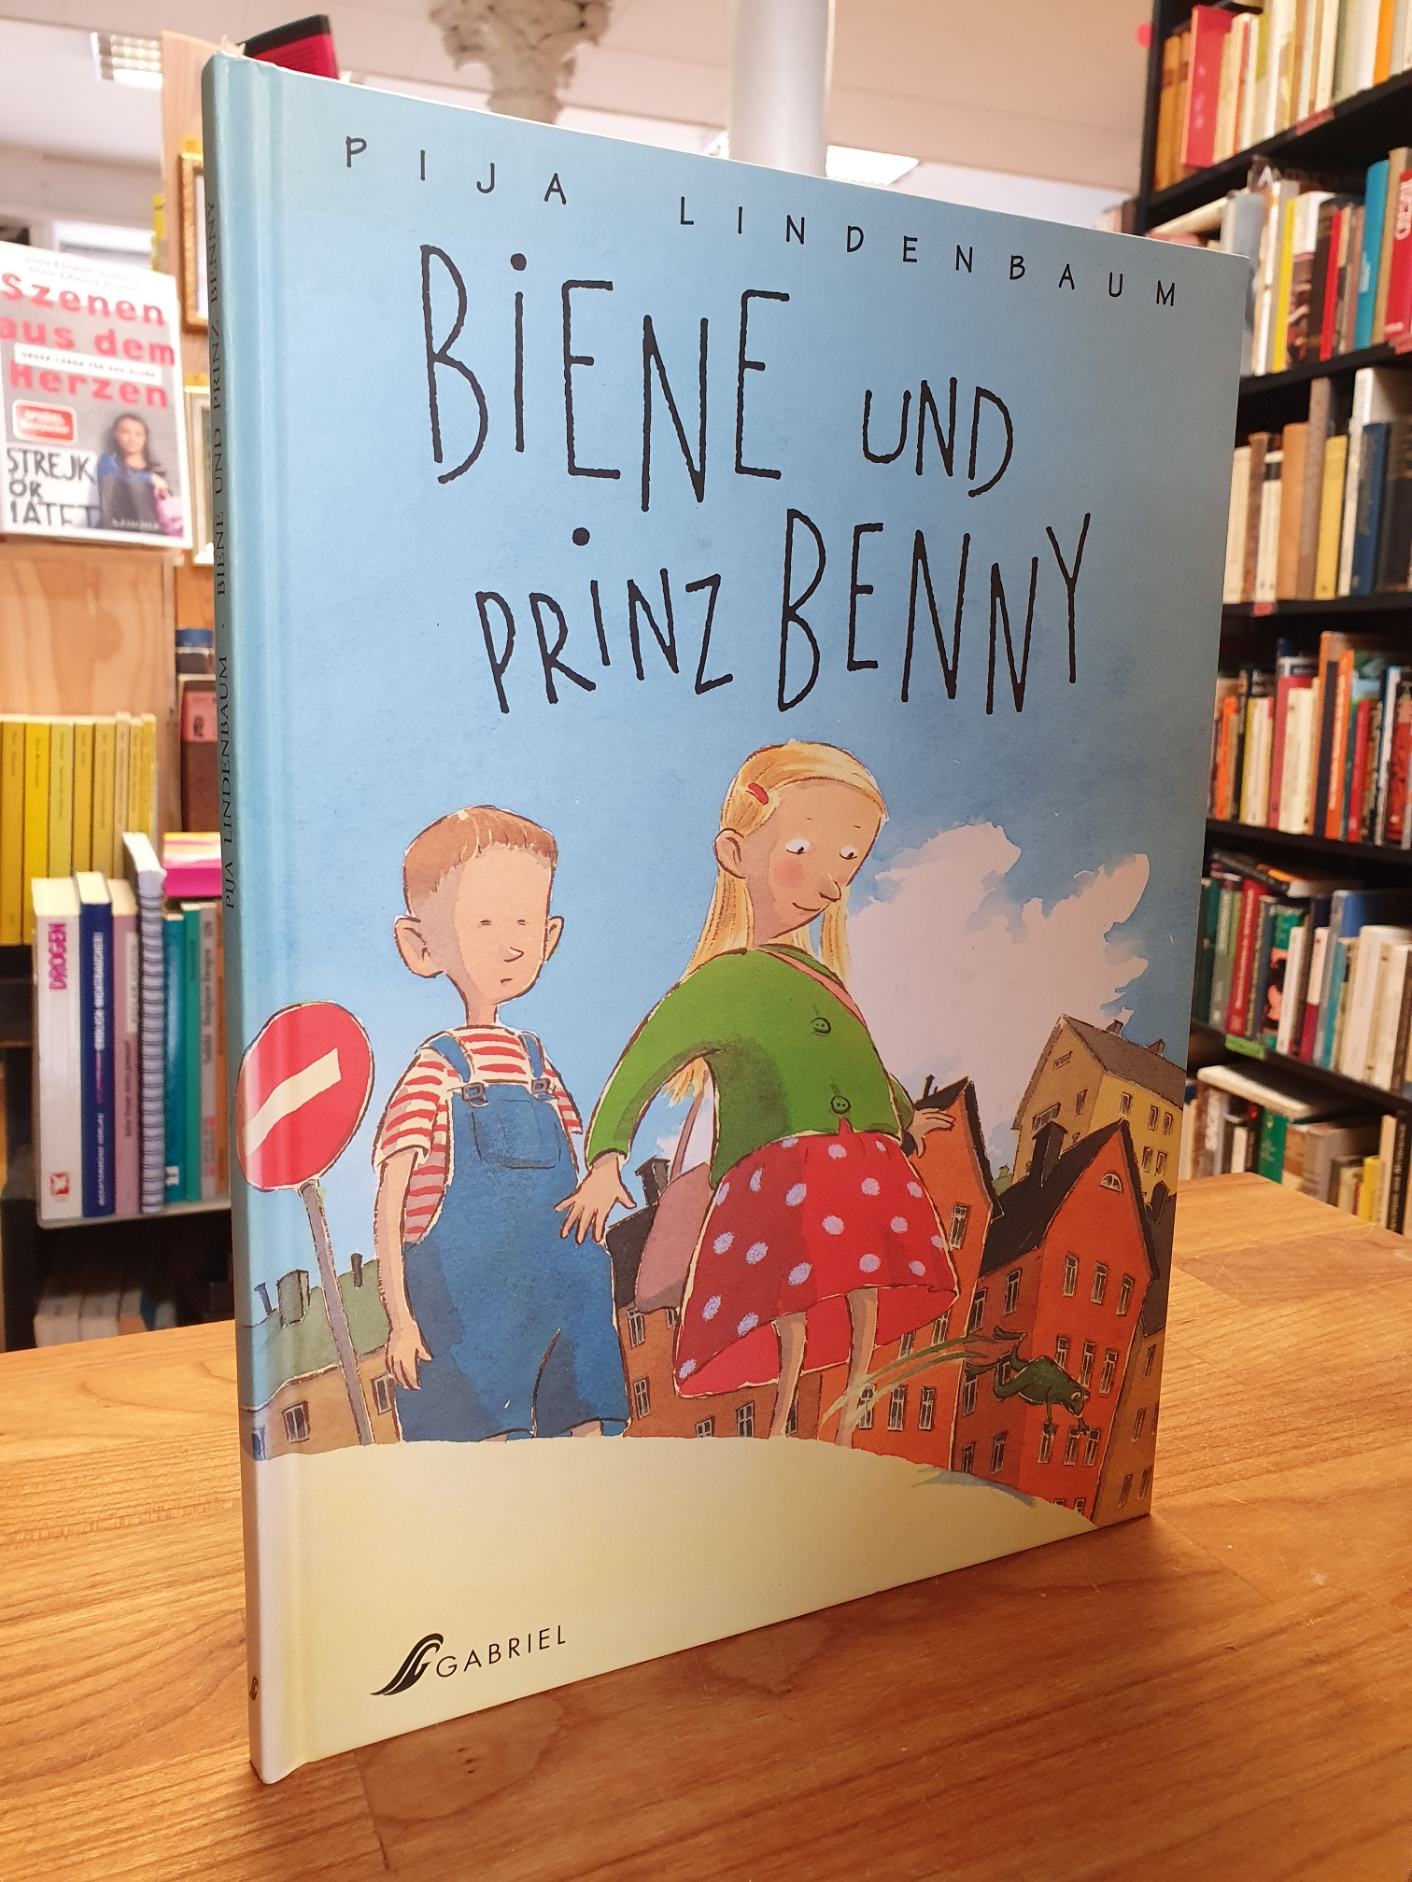 Biene und Prinz Benny, - Lindenbaum, Pija,